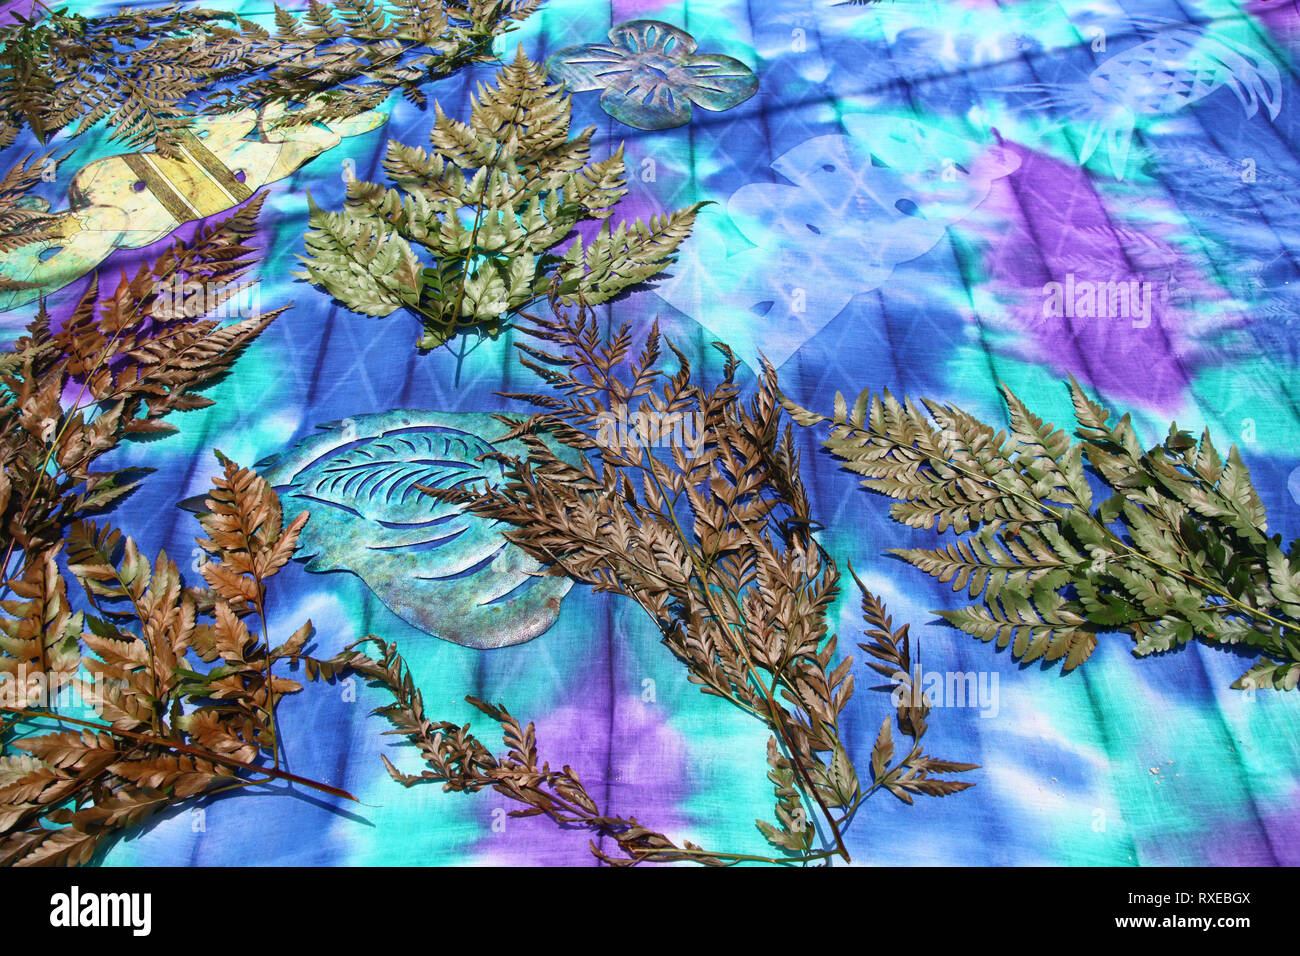 Tissu coloré avec des feuilles, des fougères et des formes de papier découpées demonstraiting comment créer tie dye designs, Bora Bora, Polynésie française. Banque D'Images